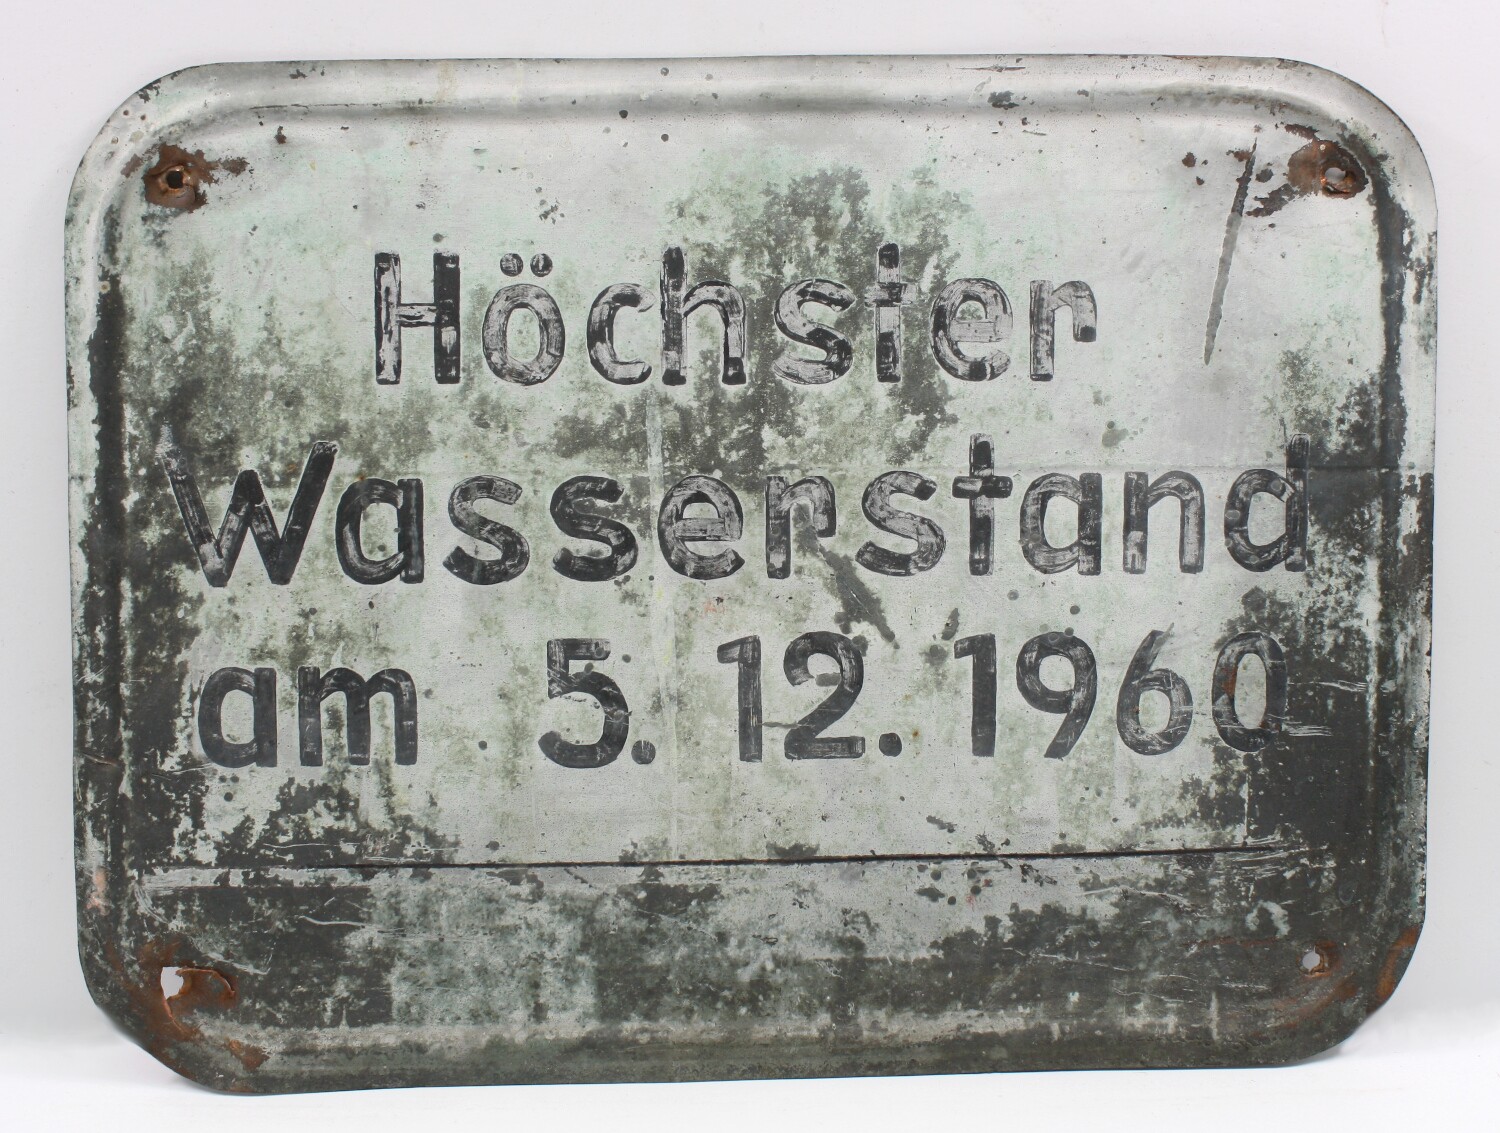 Metallschild: Hochwassermarke vom 5.12.1960 (Drilandmuseum CC BY-NC-SA)